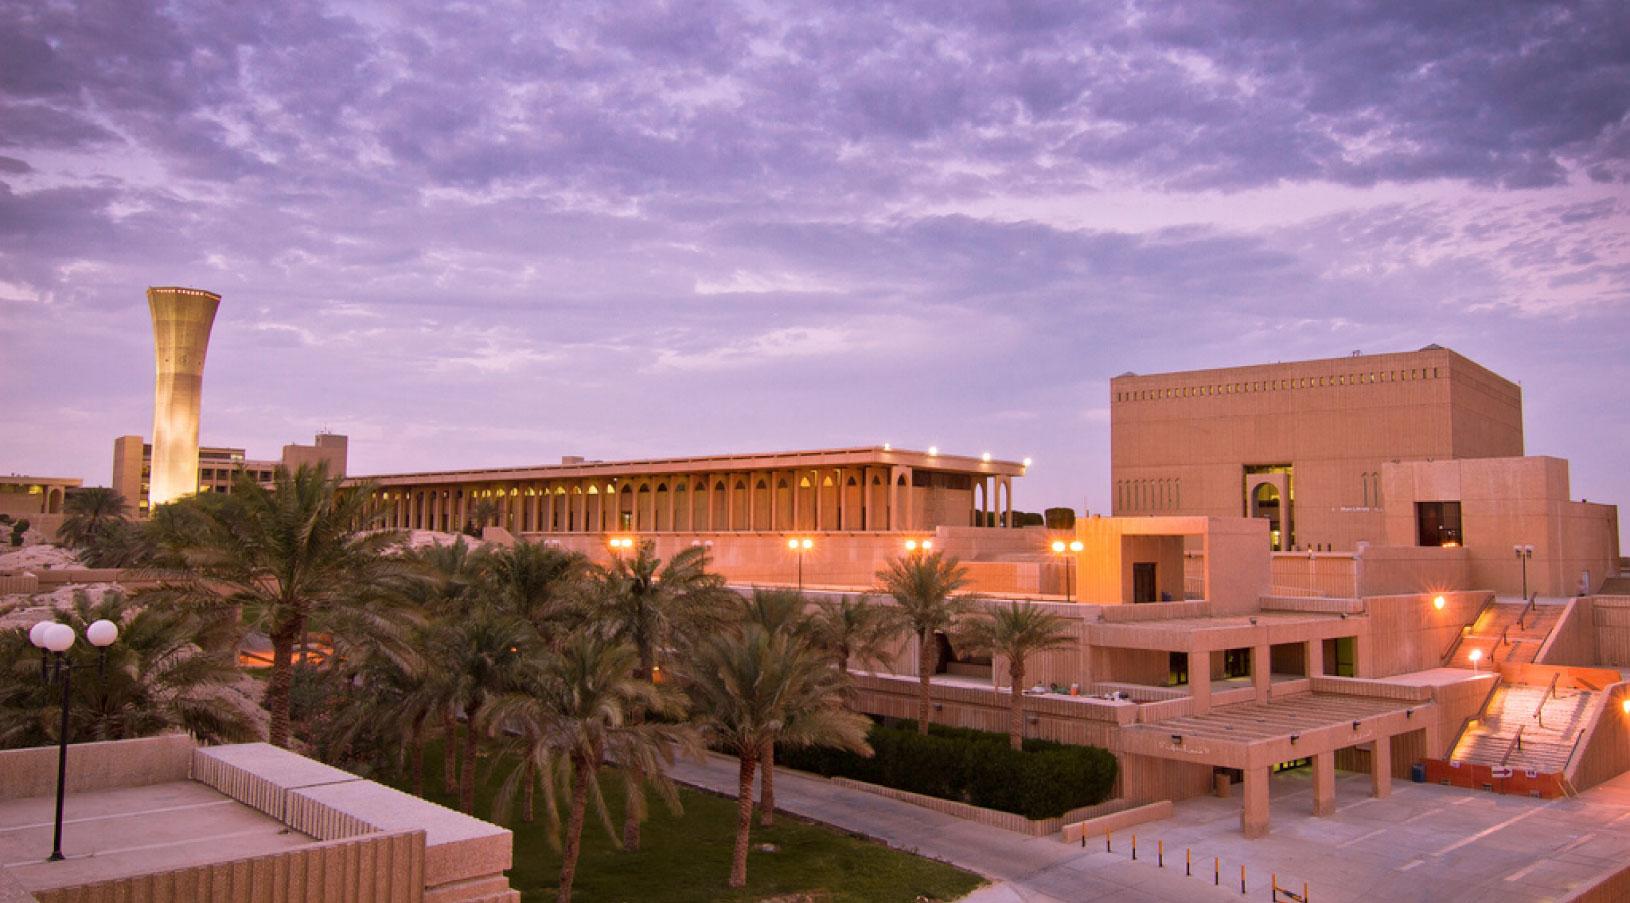 افضل الجامعات في السعودية - افضل الجامعات السعودية - جامعة الملك فهد